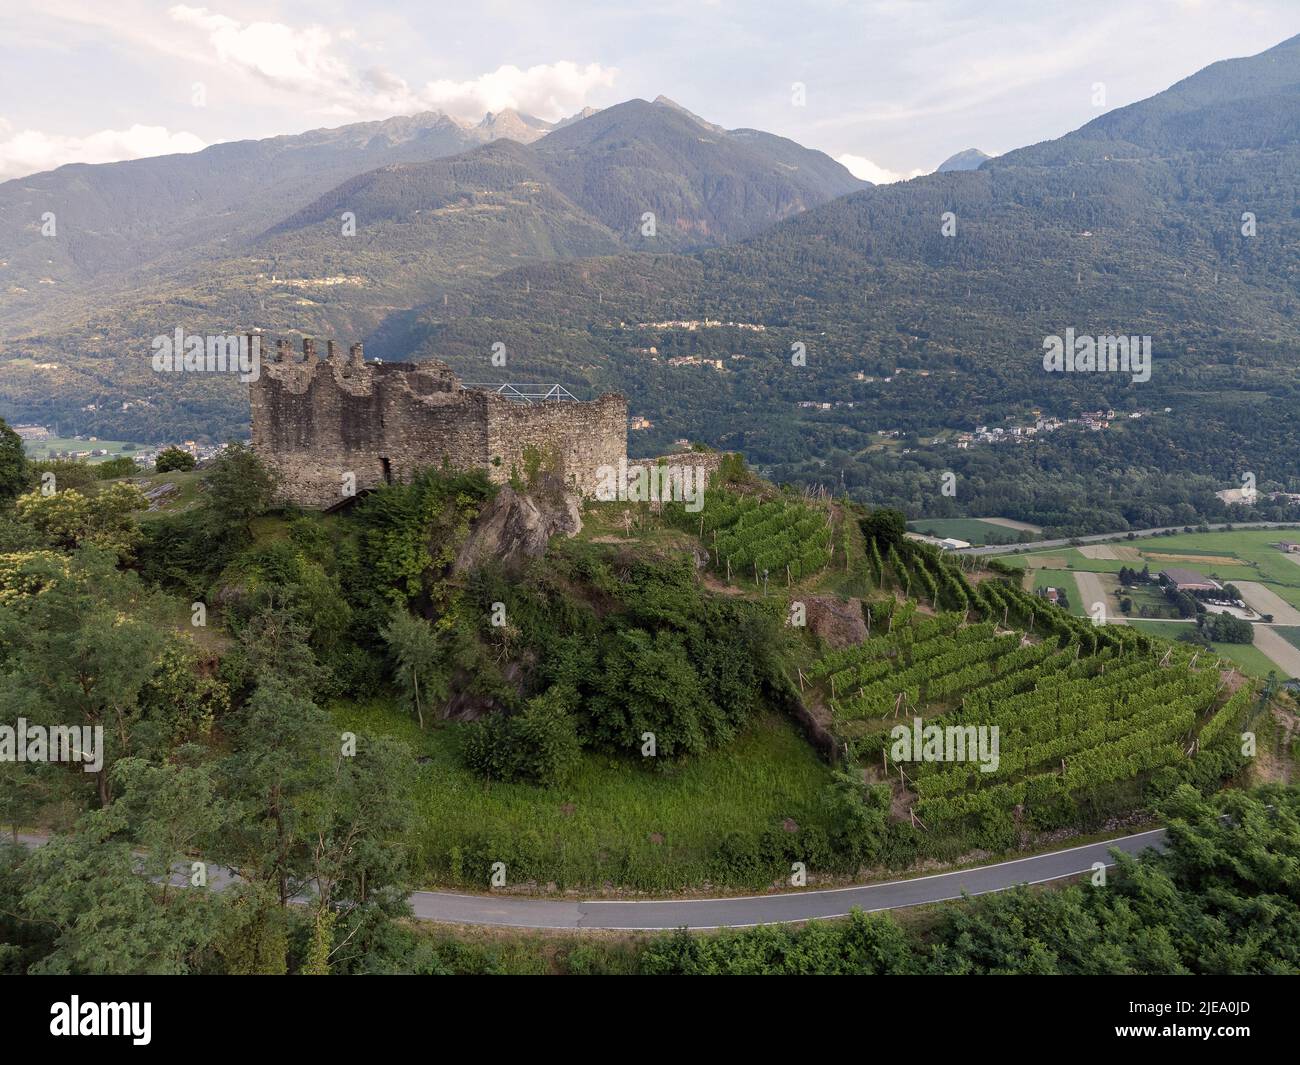 Vue aérienne - vignobles en terrasse dans les collines de Valtellina plantés près des monuments et des ruines médiévales - Sondrio, Lombardie, Italie Banque D'Images